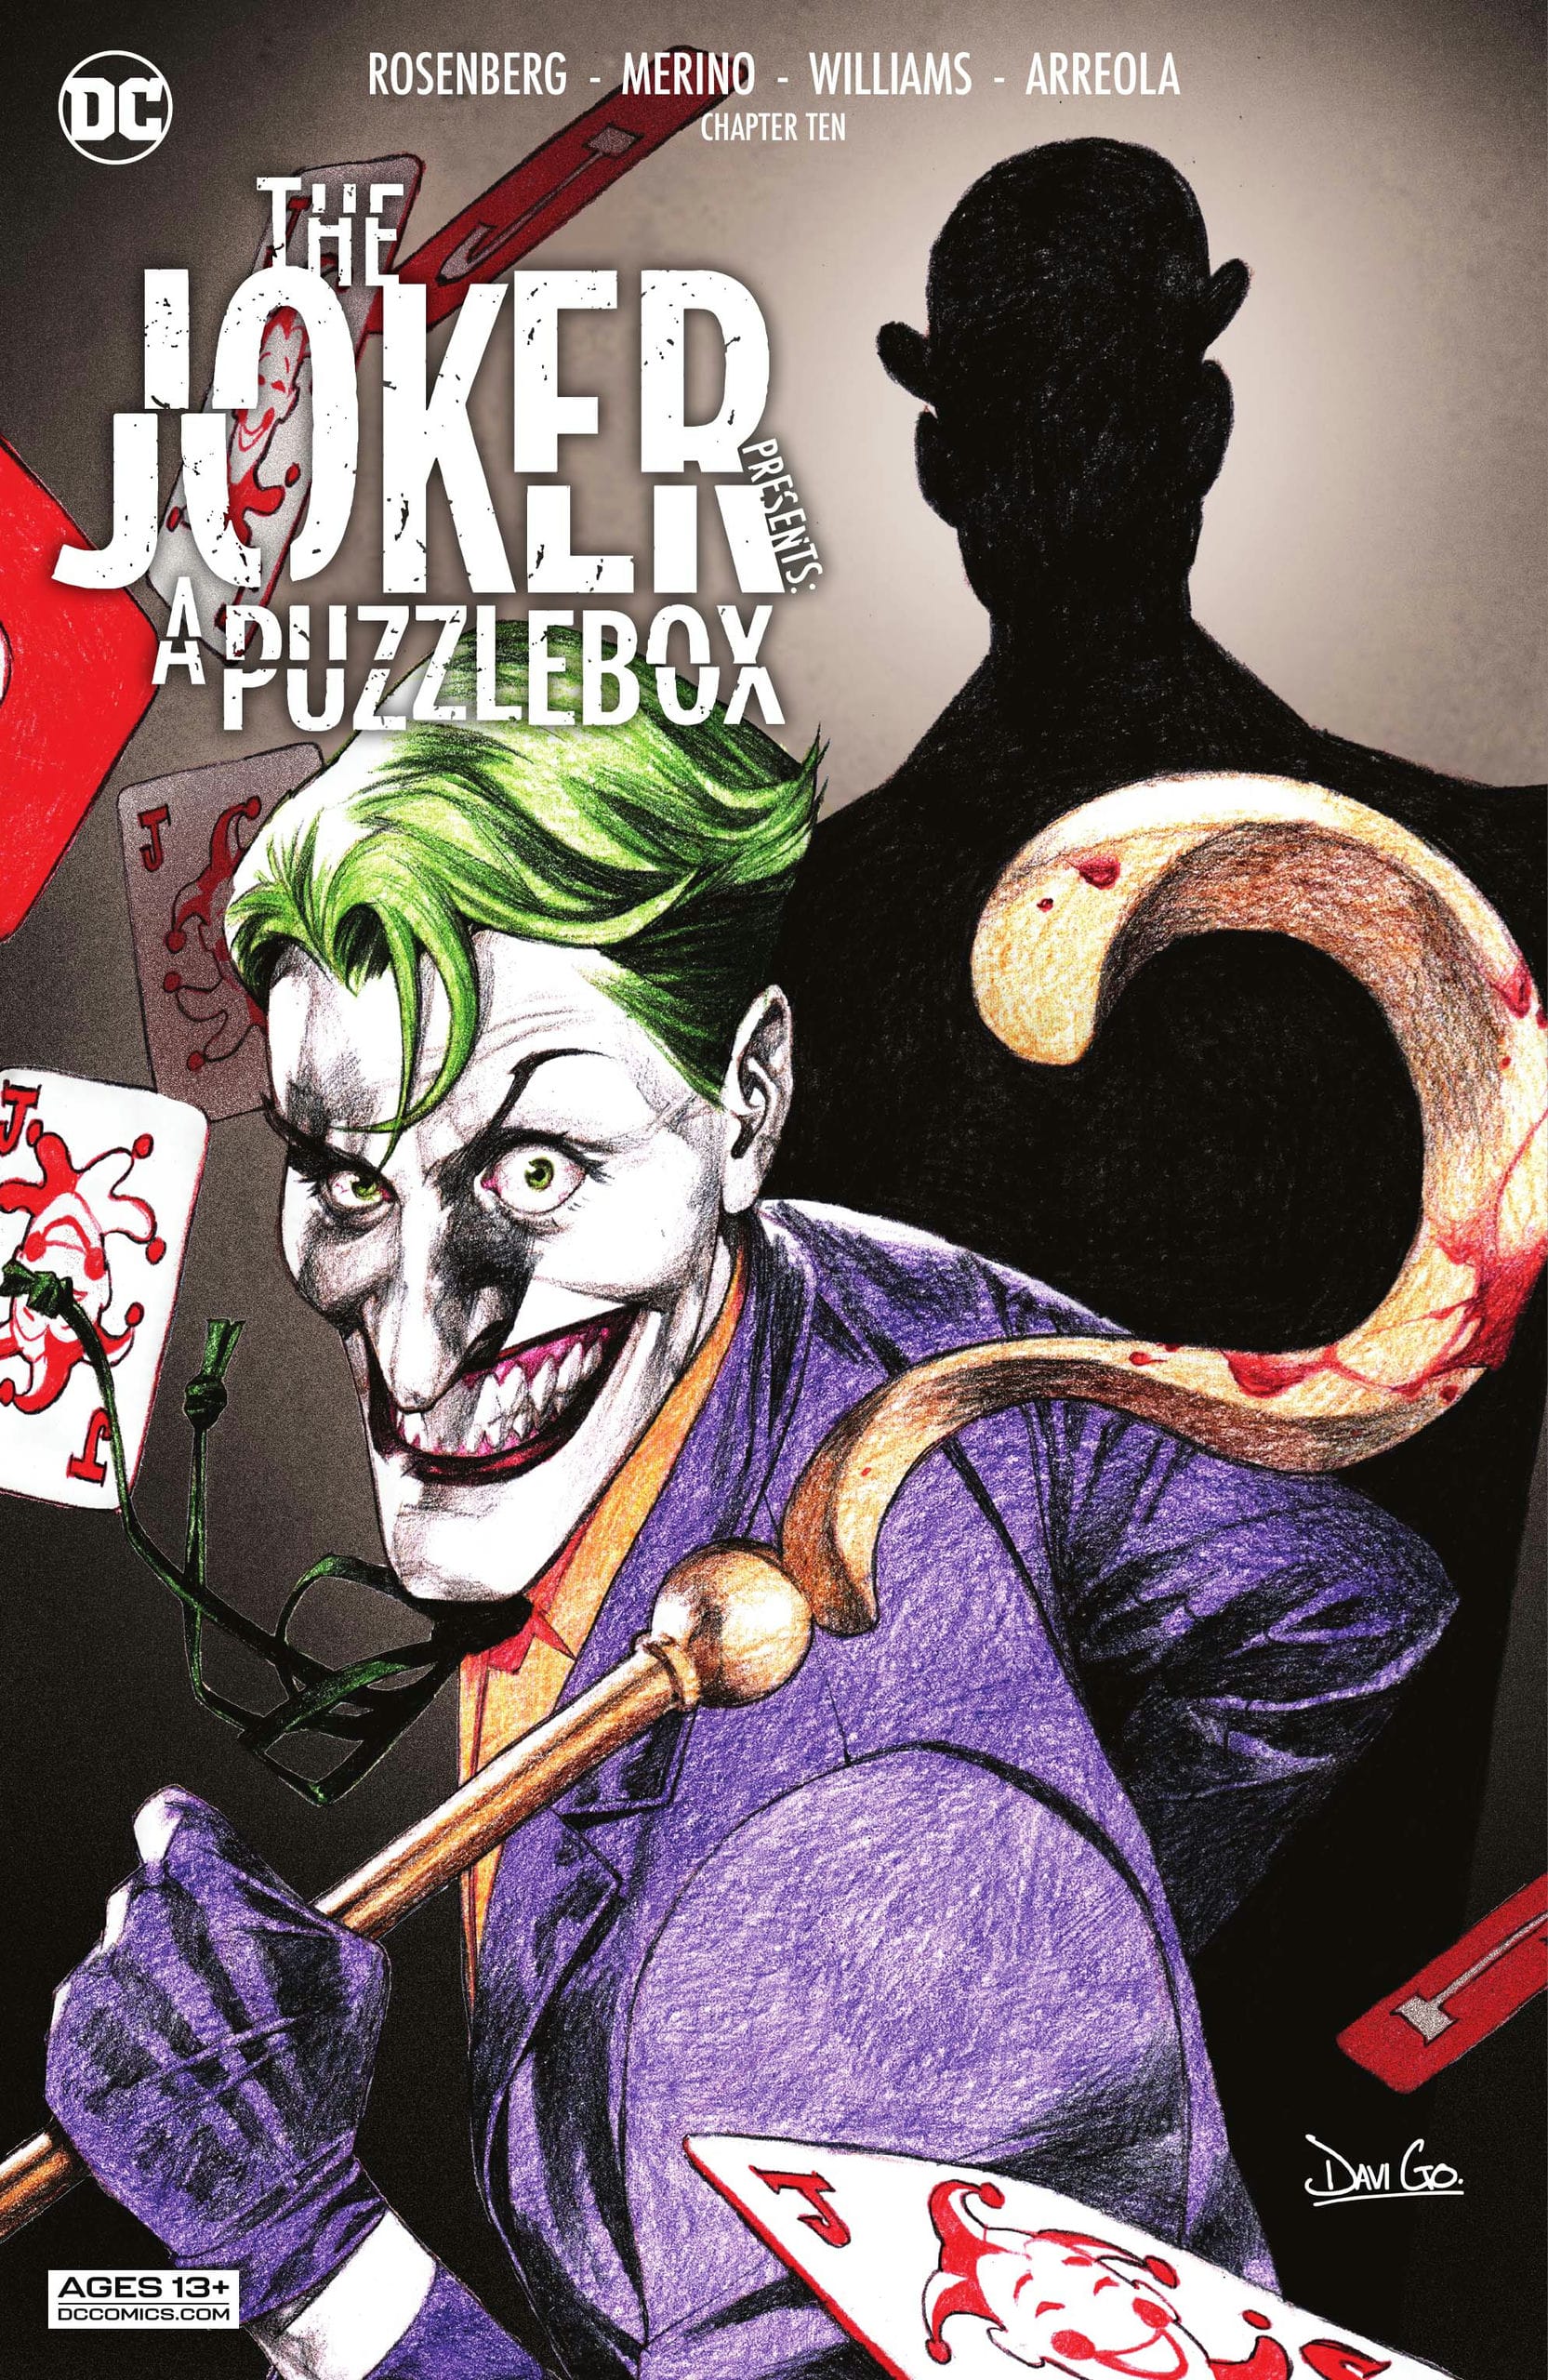 https://langgeek.net/wp-content/webpc-passthru.php?src=https://langgeek.net/wp-content/uploads/2023/01/The-Joker-Presents-A-Puzzlebox-Director_s-Cut-010-000.jpg&nocache=1